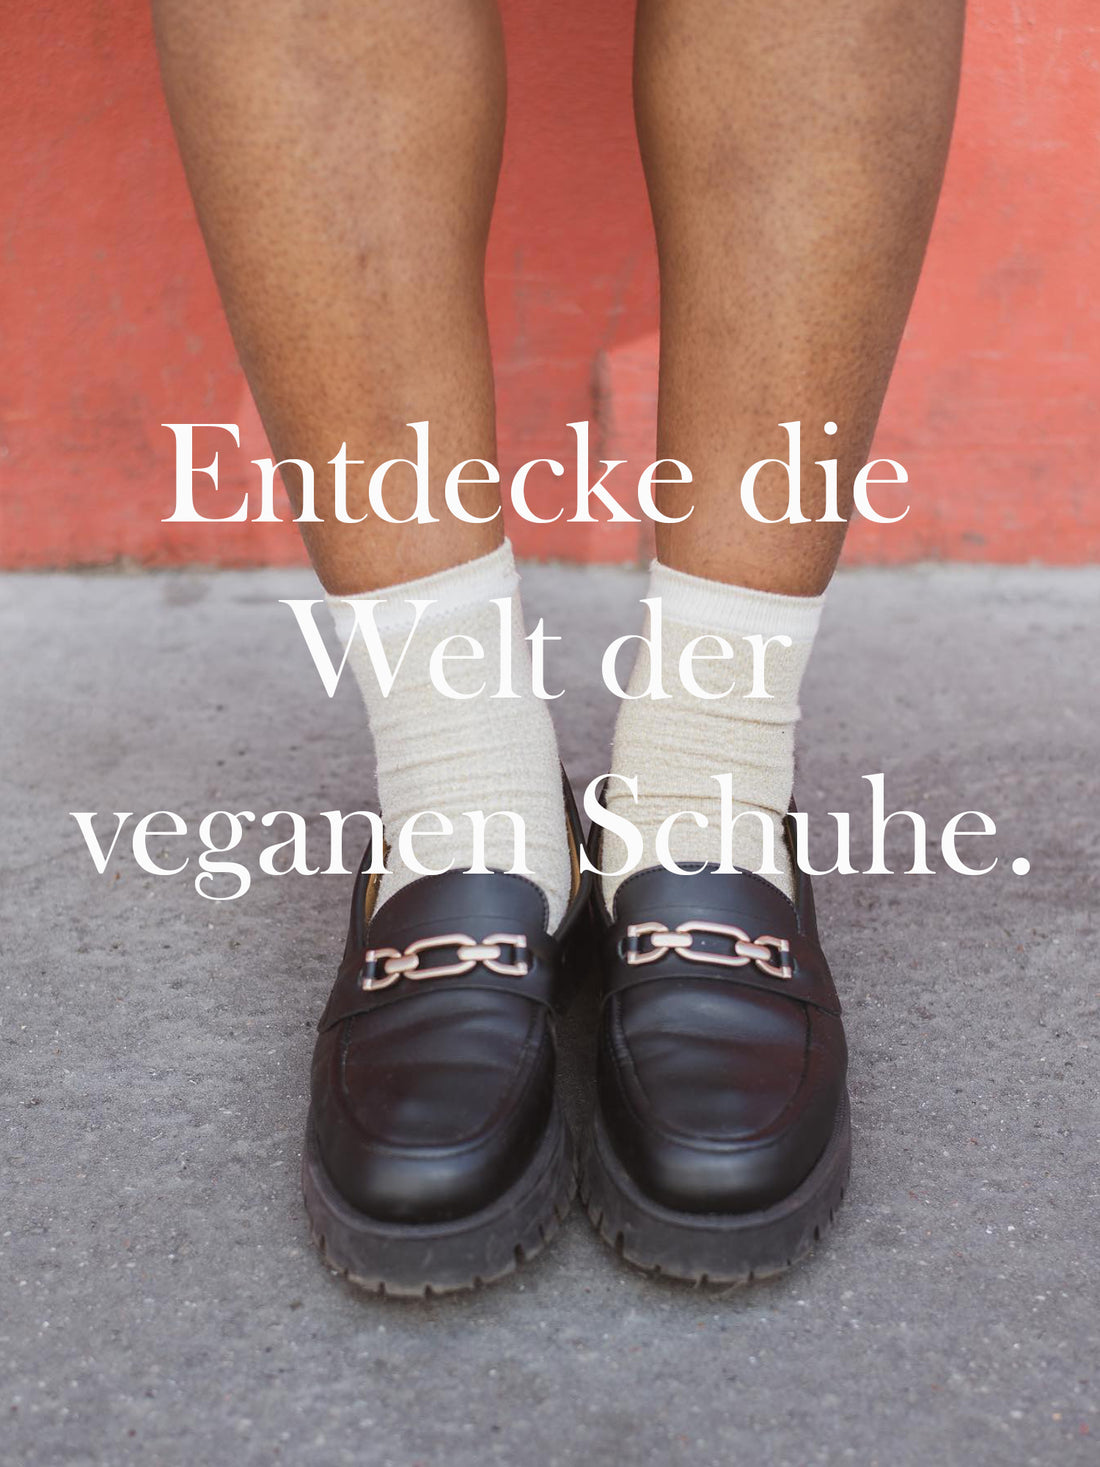 Entdecke die Welt der veganen Schuhe.